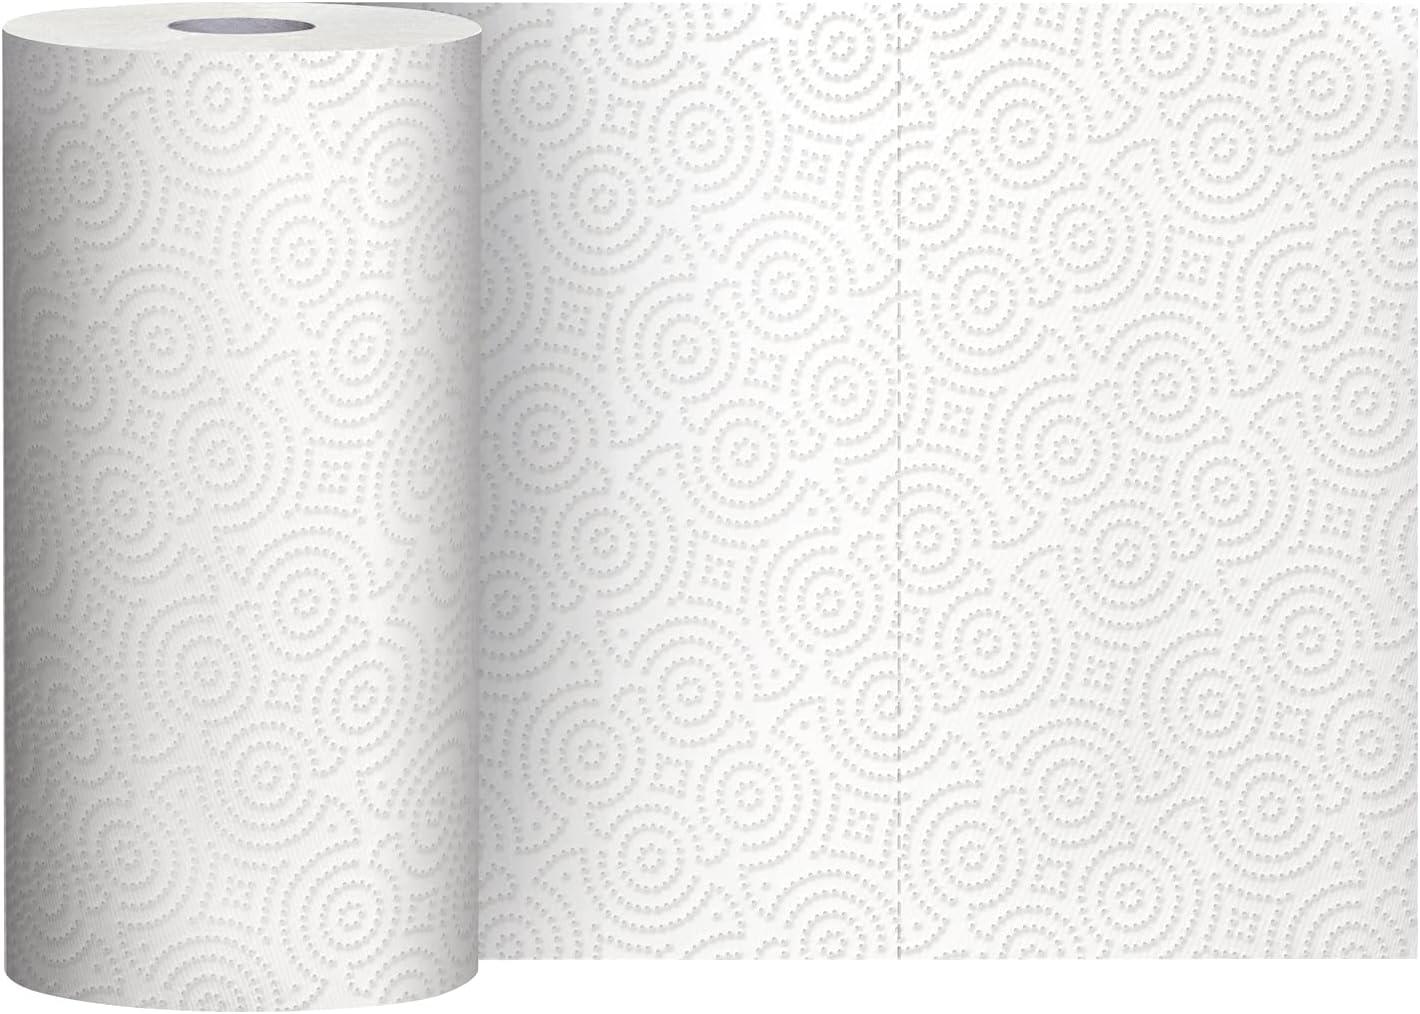 Tienda Basics Toallas de papel de 2 capas, hojas flexibles, 6 rollos (paquete - VIRTUAL MUEBLES